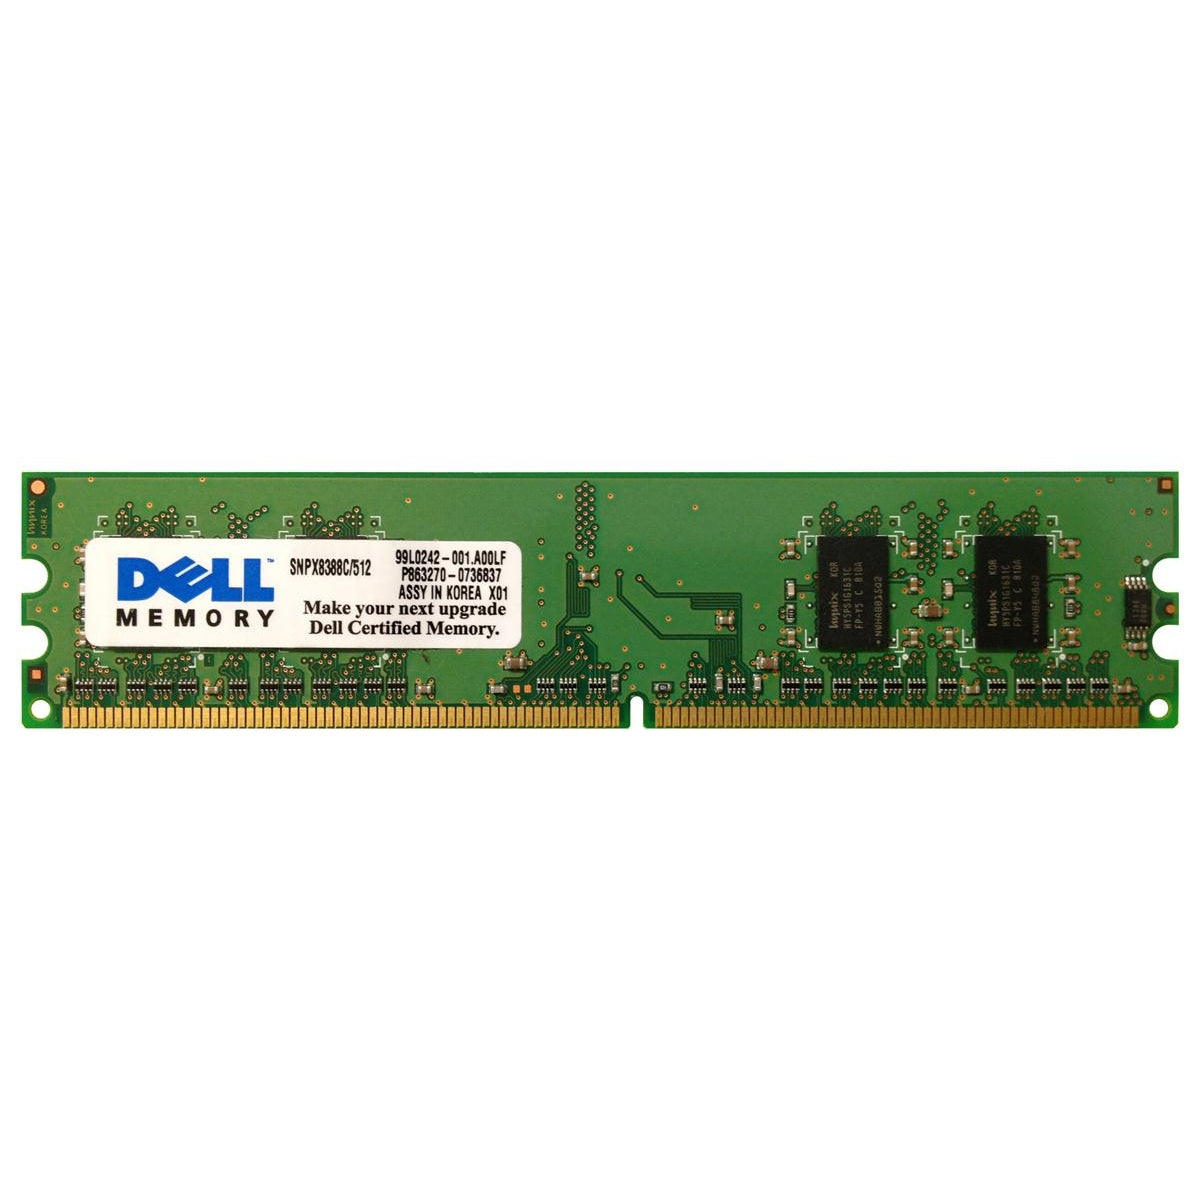 Dell SNPX8388C/512 512 MB Memory Module Upgrade